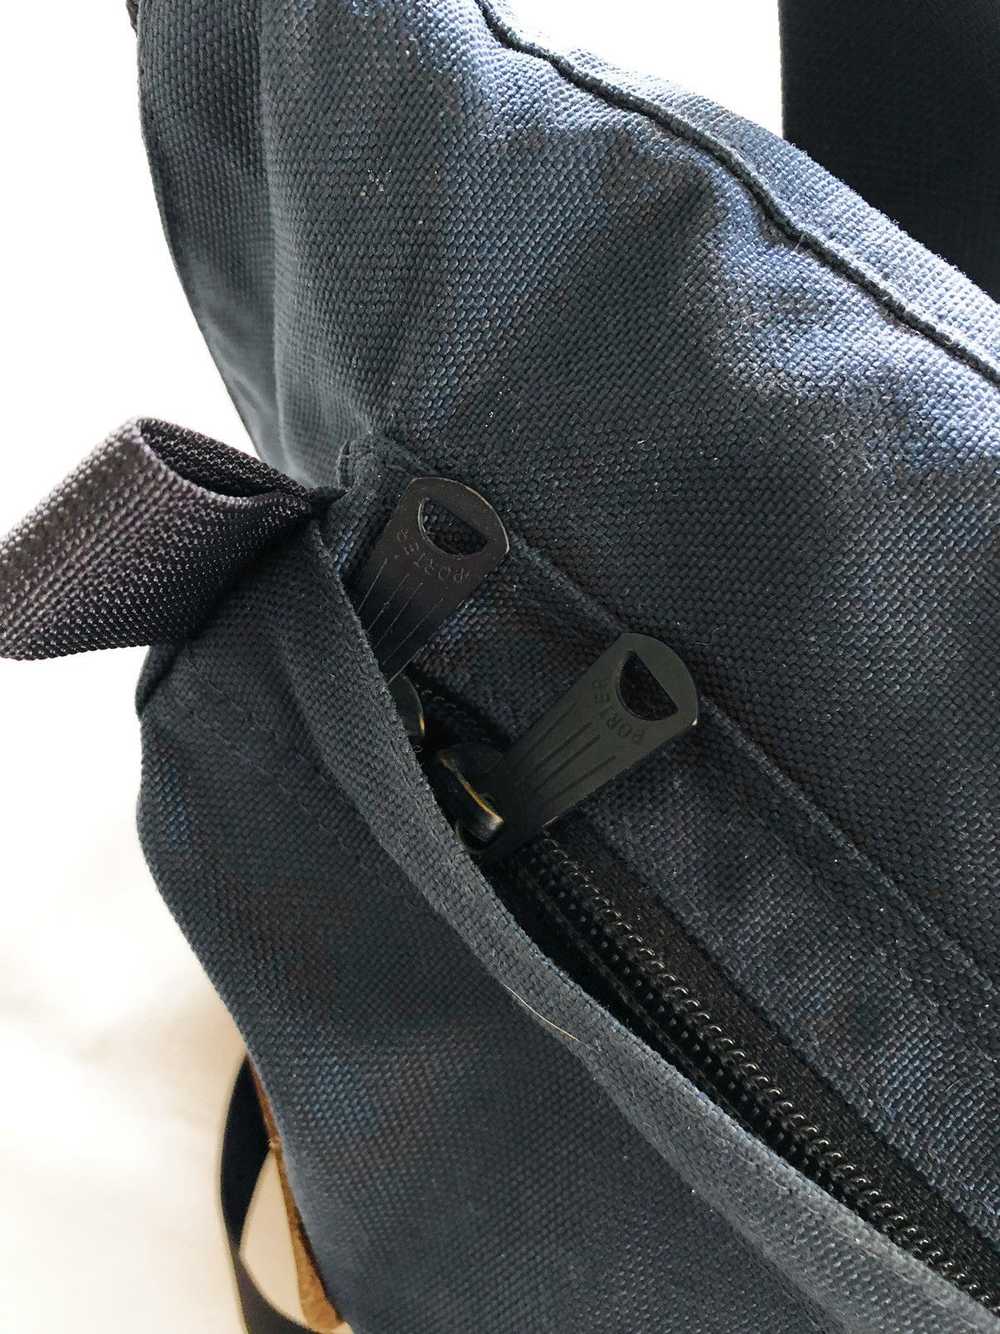 Japanese Brand × Porter porter slingbag - image 4